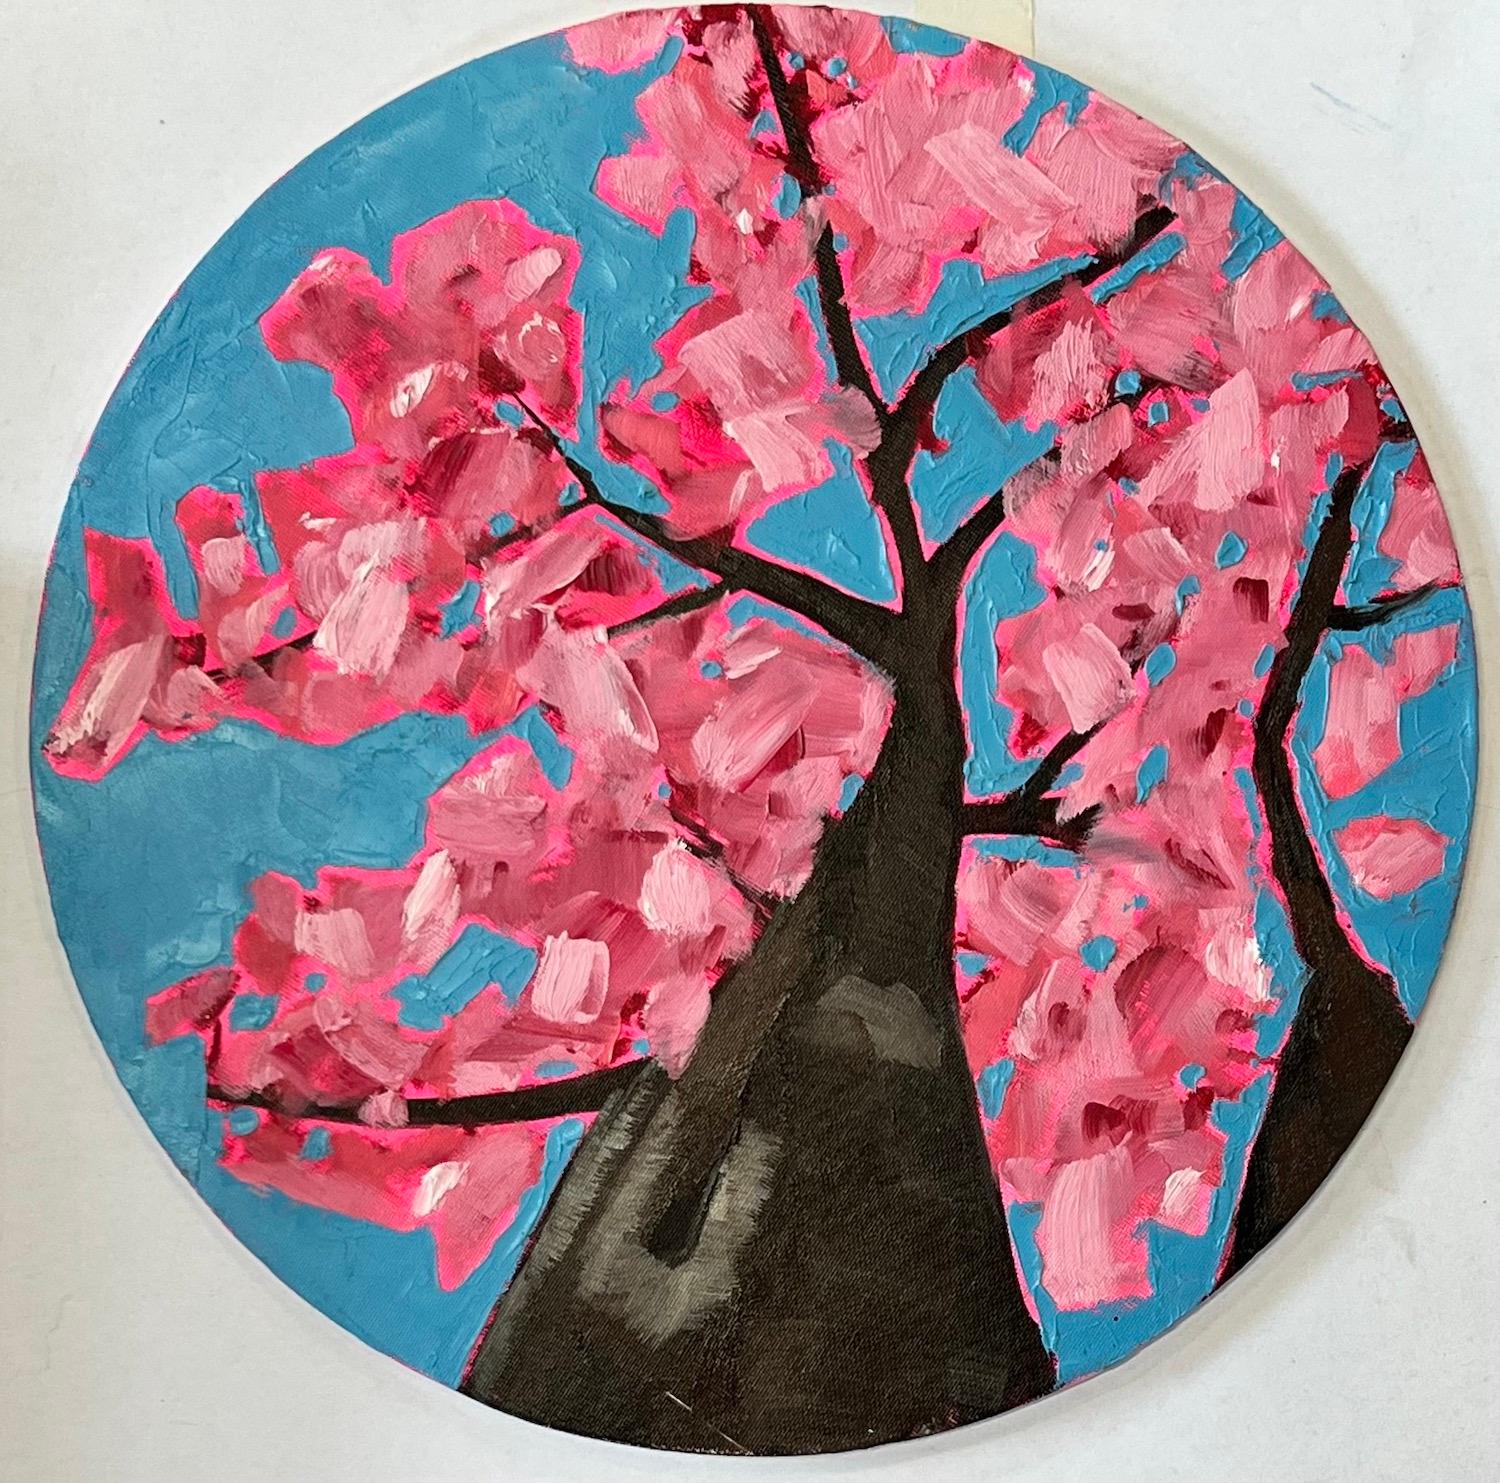 Emily Finch, Looking Up through Cherry Blossom to Reflect, Kunst der geistigen Gesundheit